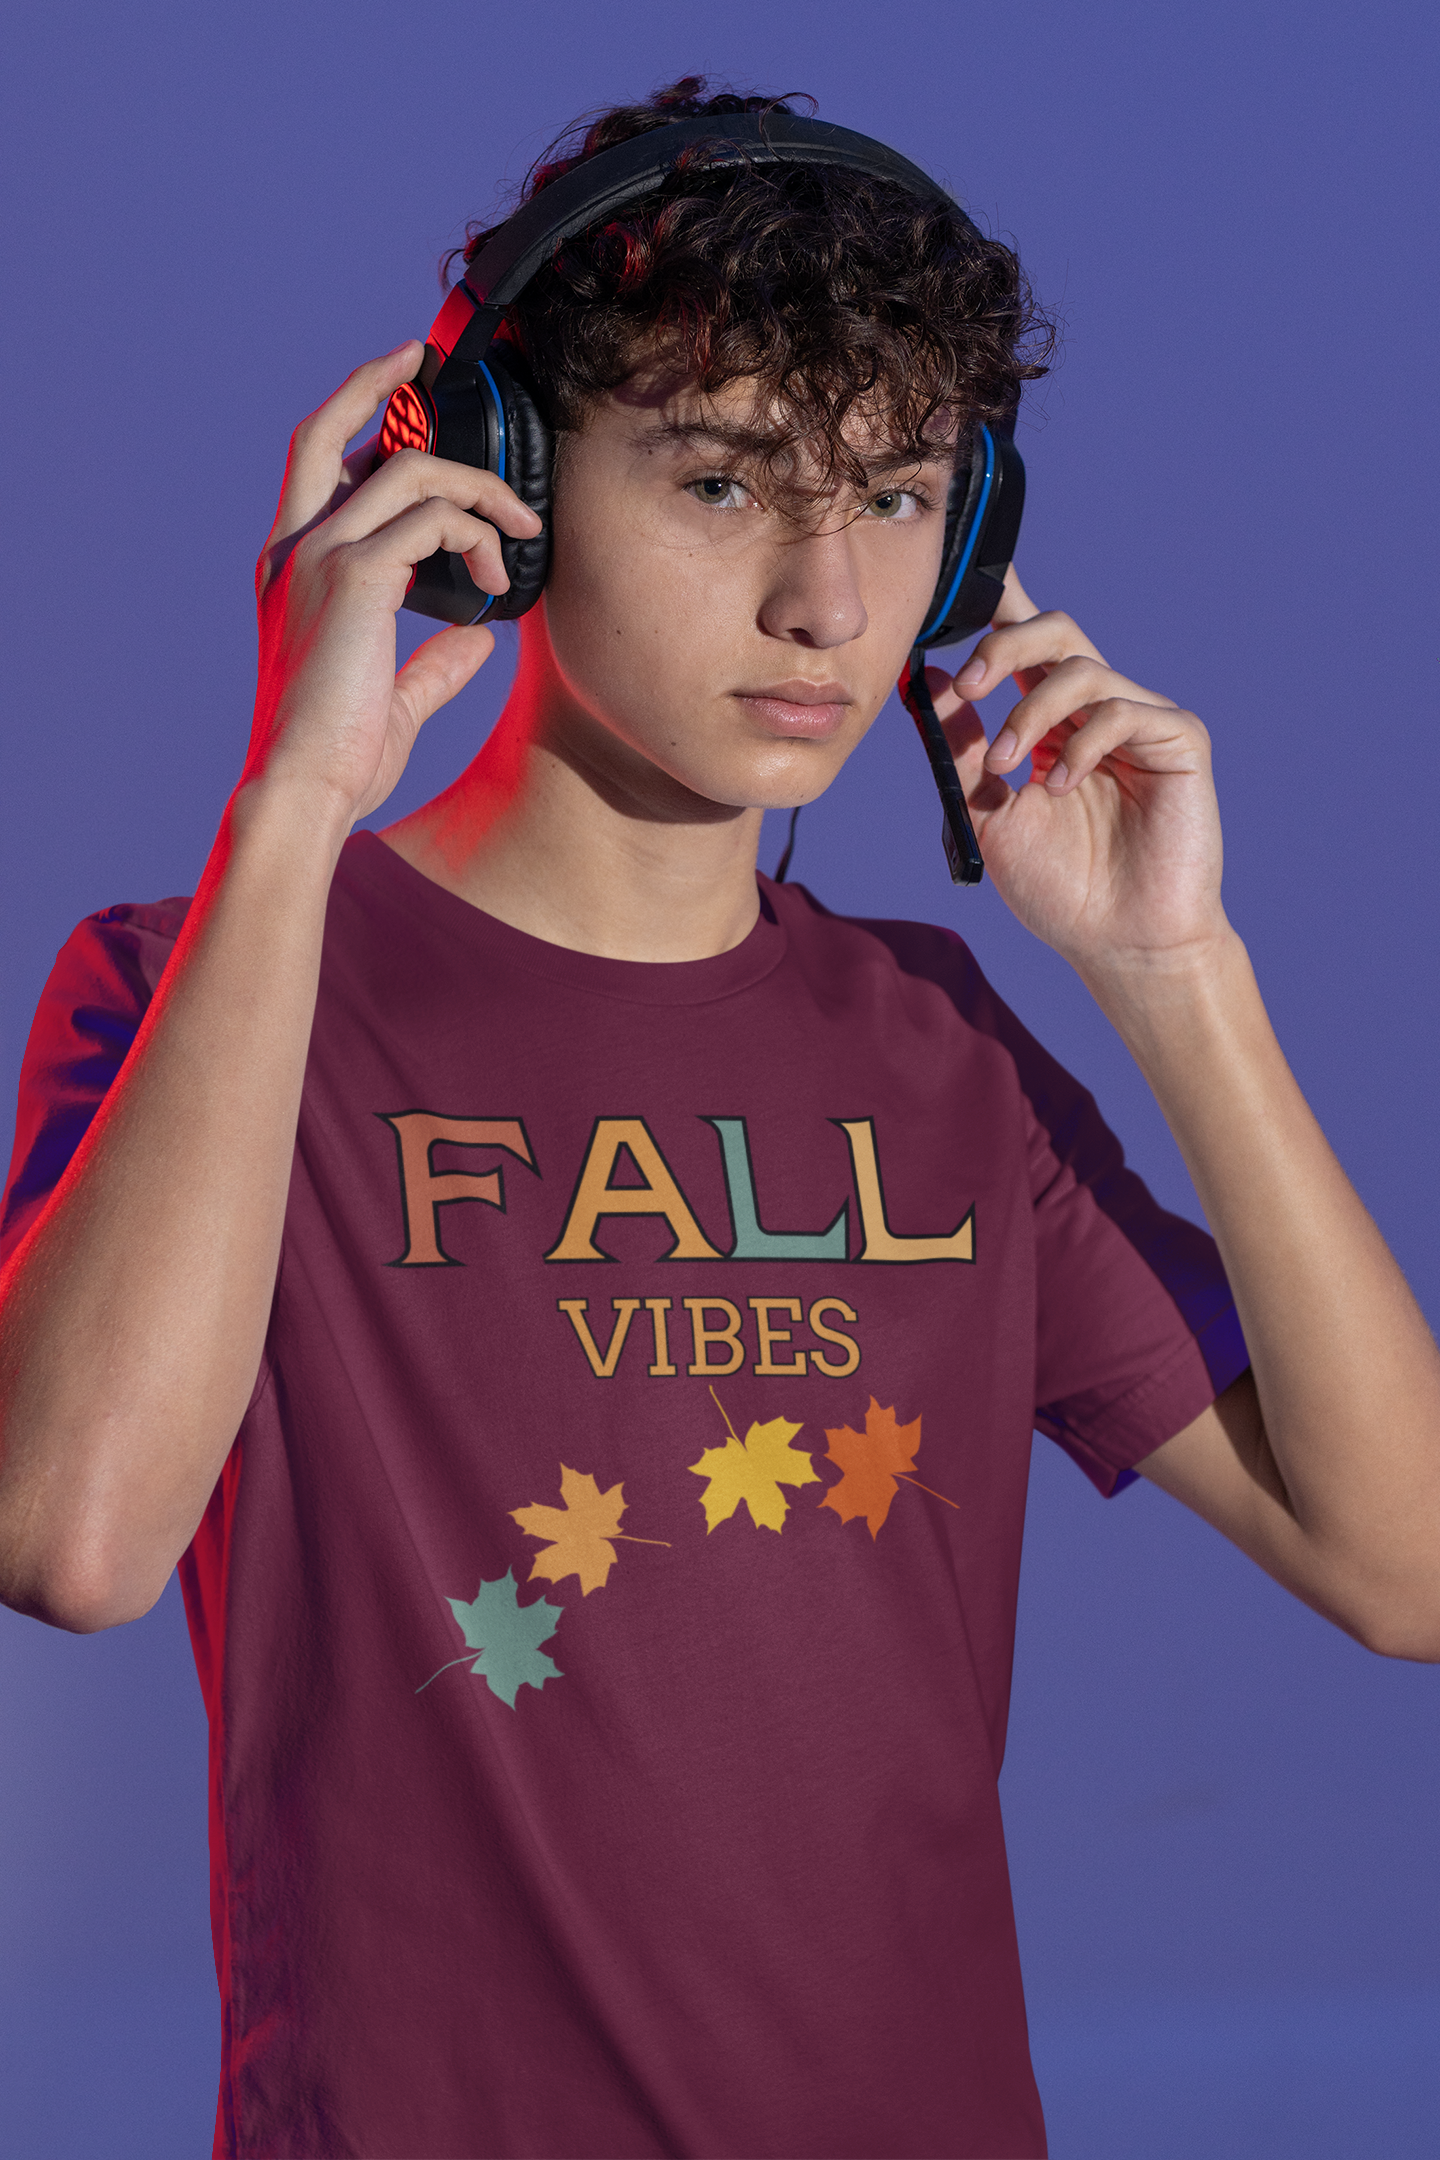 Fall Vibes - Boy's, Teen, Youth T-Shirt